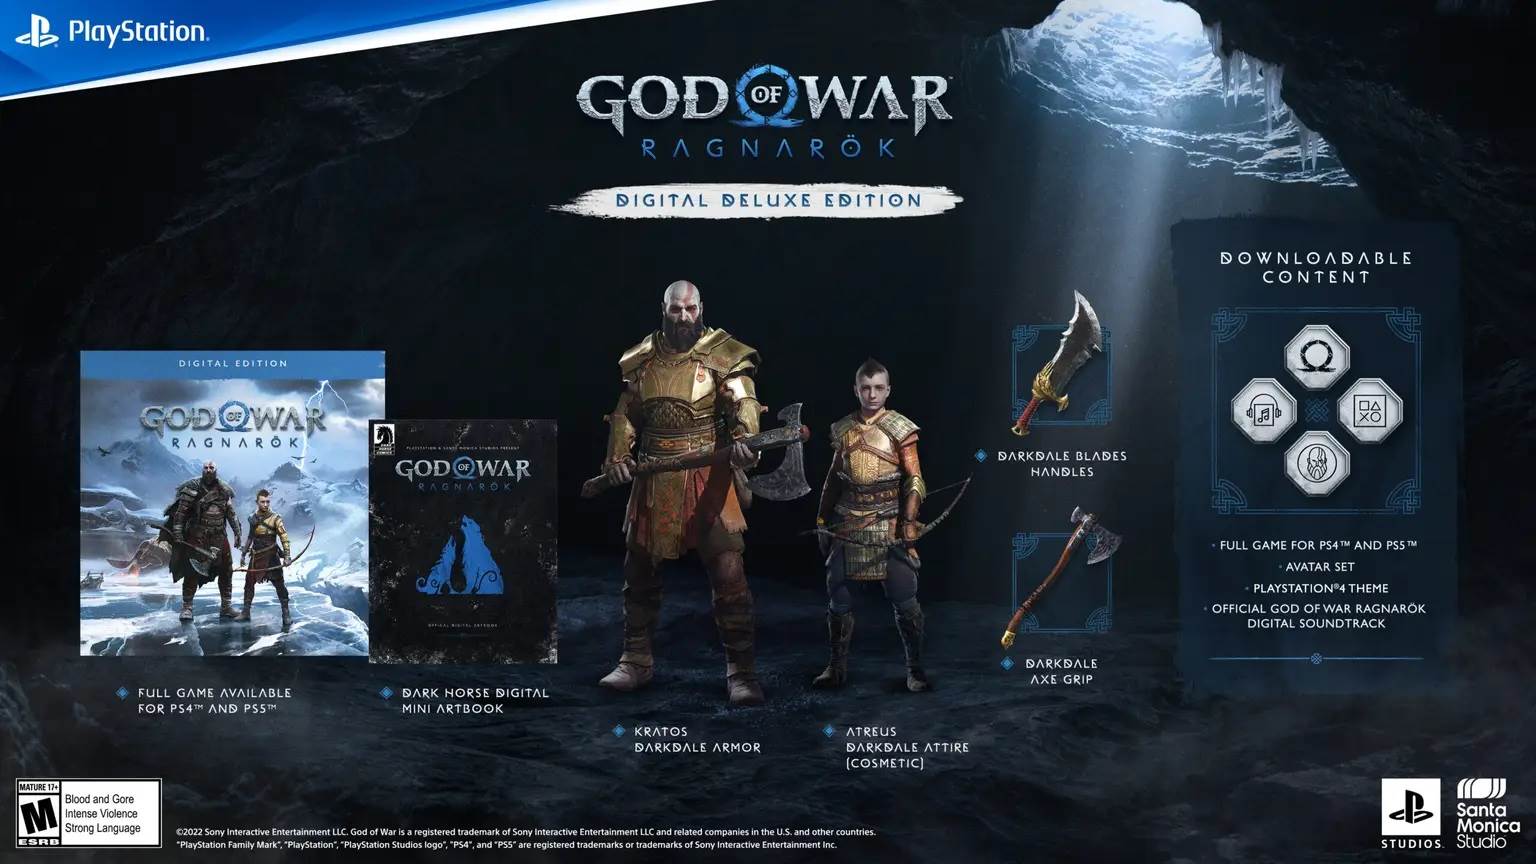  God of War Ragnarök – Digital Deluxe Edition.jpg 